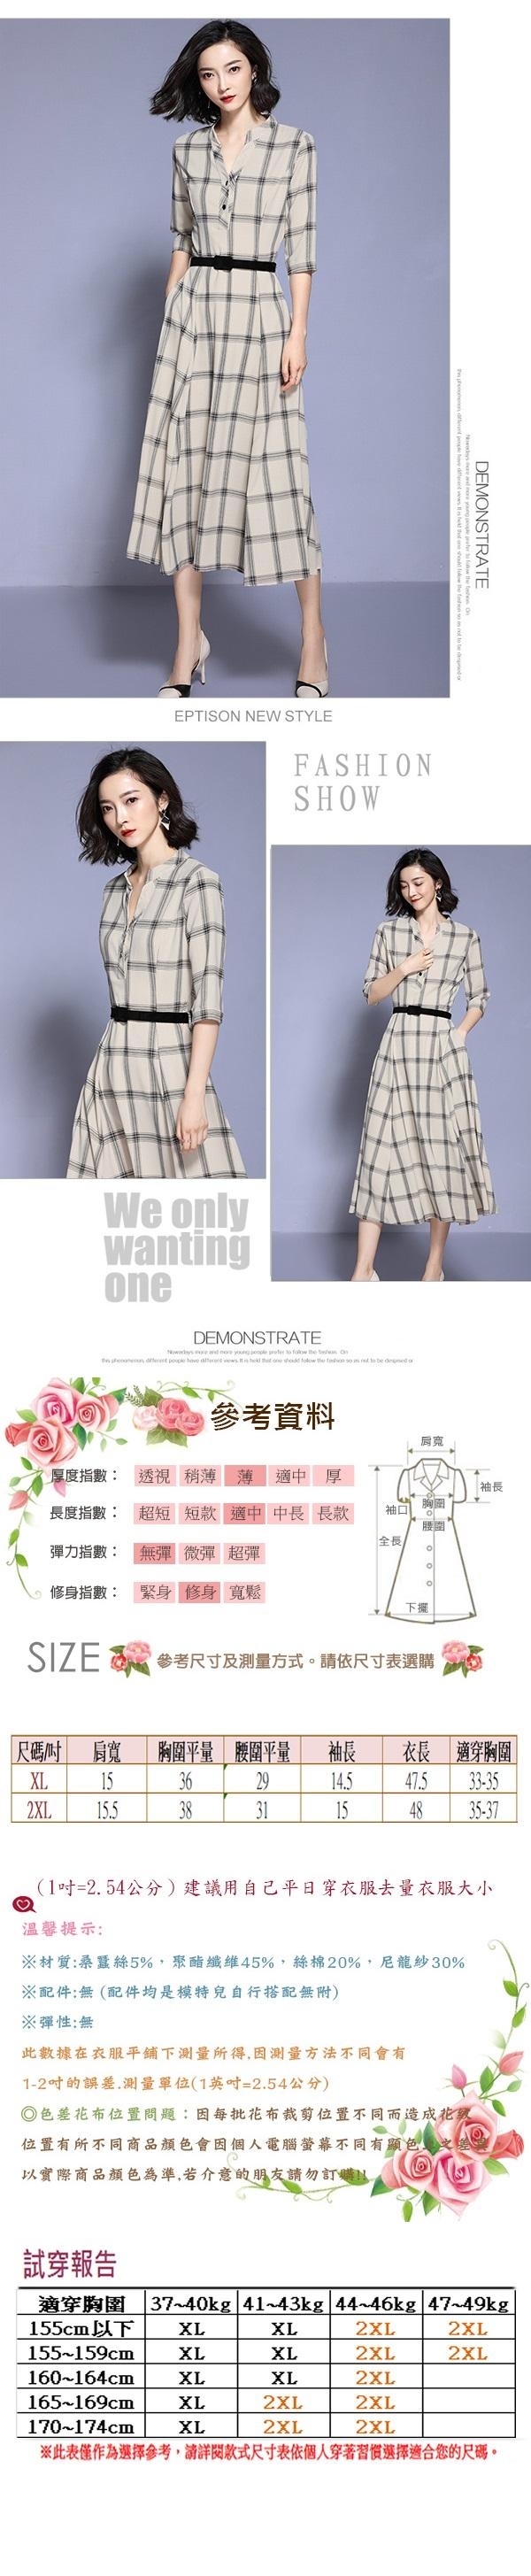 【韓國K.W.】特惠款粉彩甜心短袖洋裝-3色